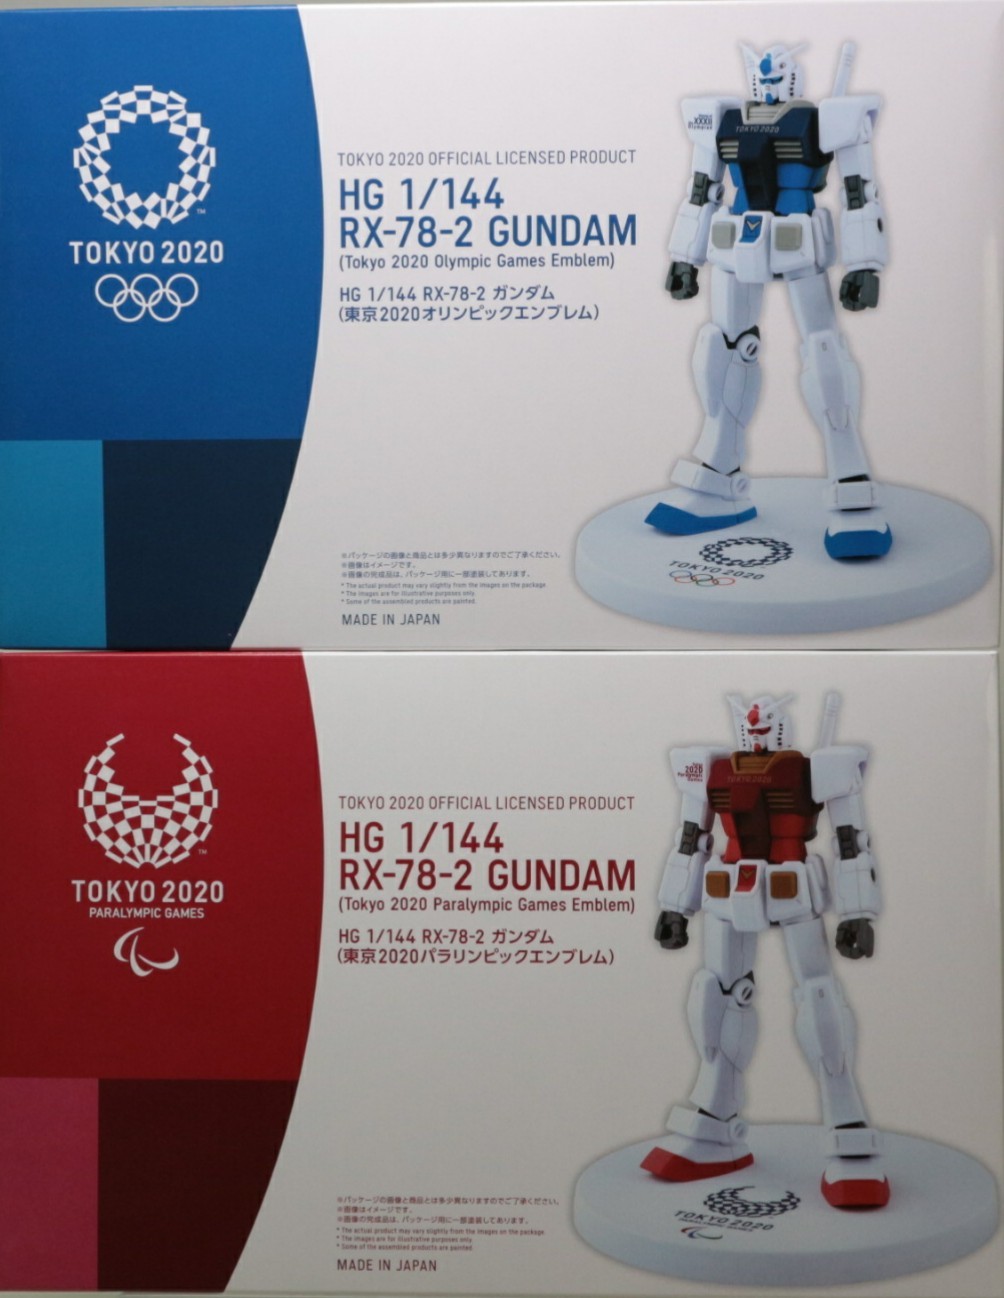 HG 1/144 RX-78-2 ガンダム(東京2020オリンピックエンブレム)/(東京 